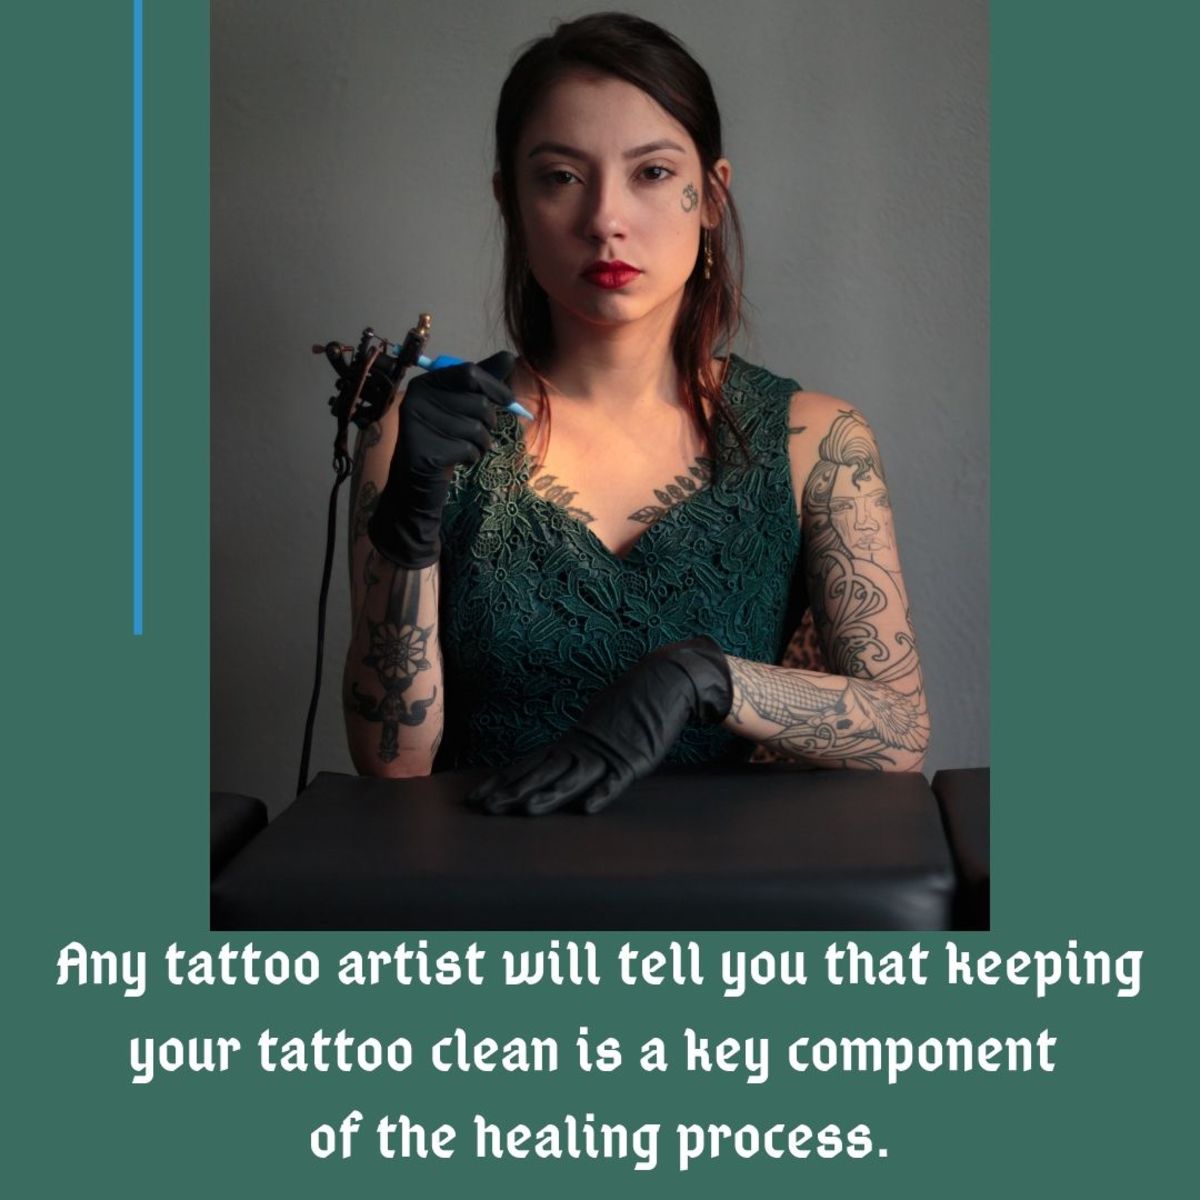 Sørg for å holde tatoveringen ren og fuktig under helbredelsesprosessen.